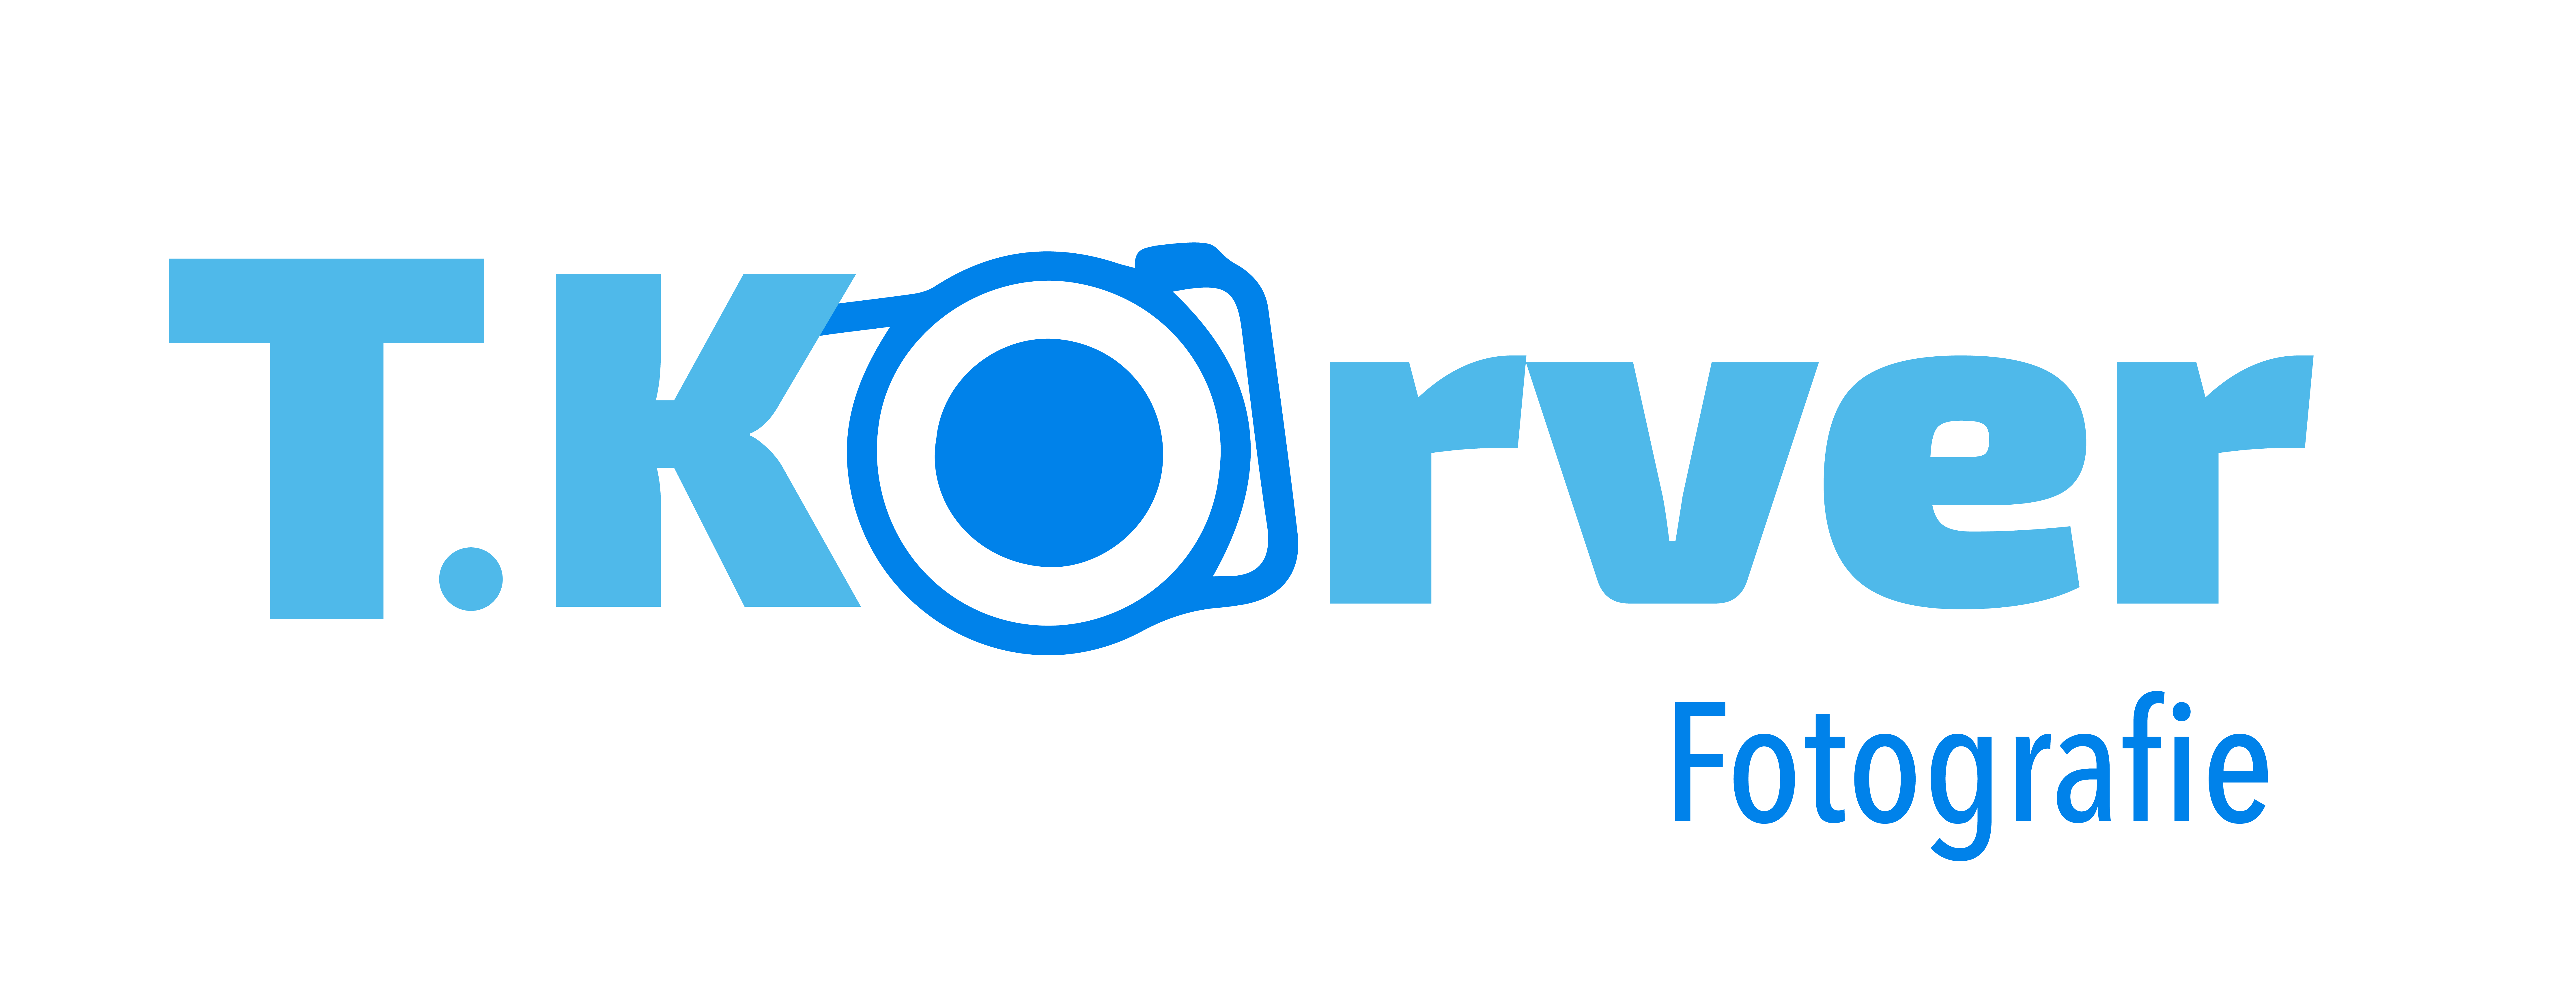 T.KORVER FOTOGRAFIE Logo